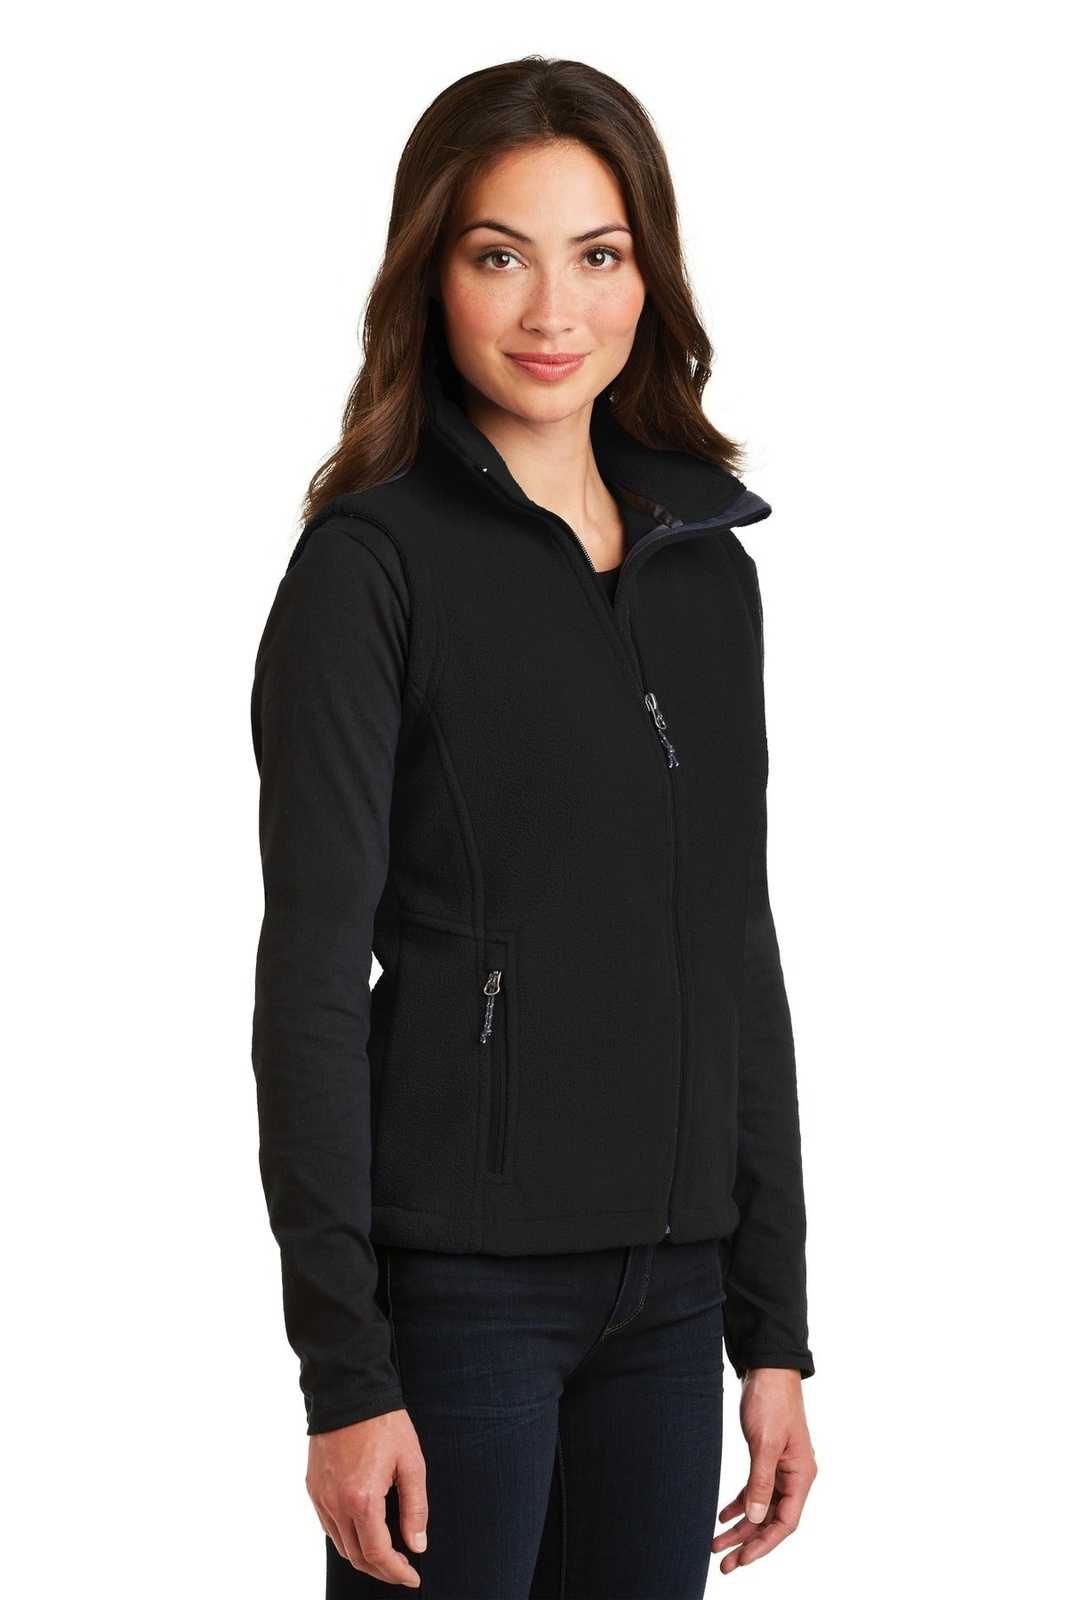 Port Authority L219 Ladies Value Fleece Vest - Black - HIT a Double - 4